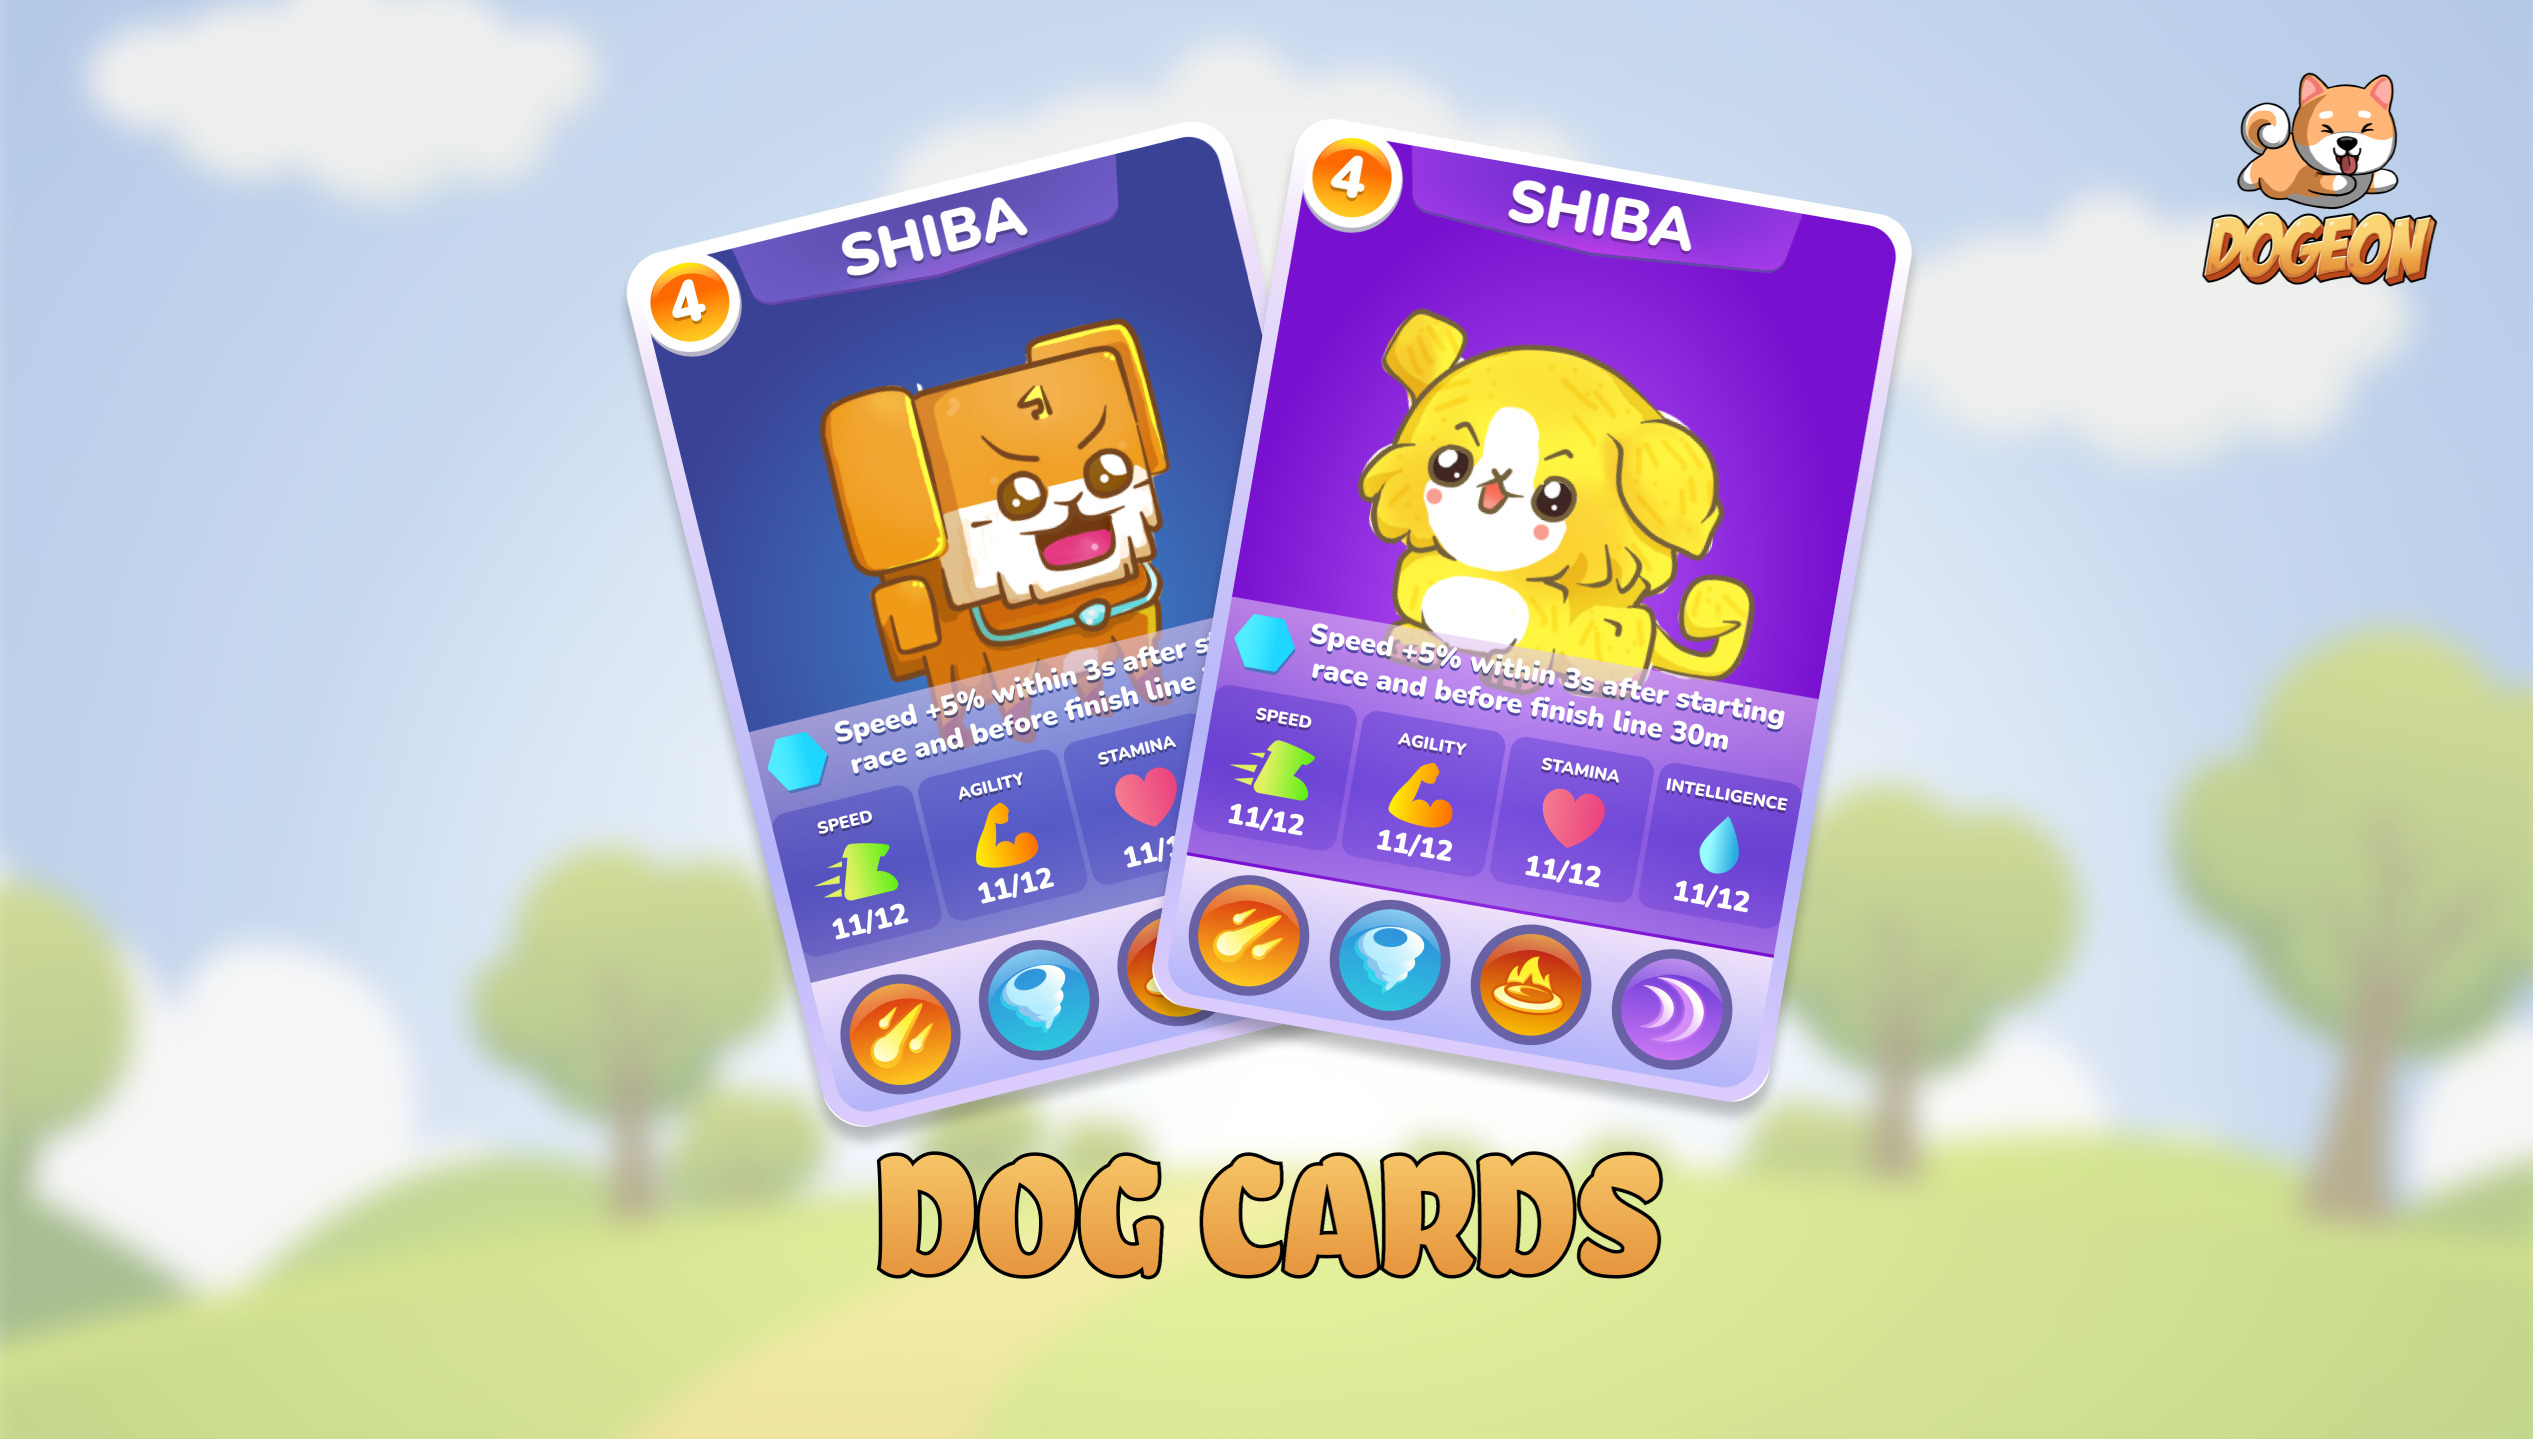 Các Dog cards có thể kết hợp với nhau để tạo ra một con chó mới.